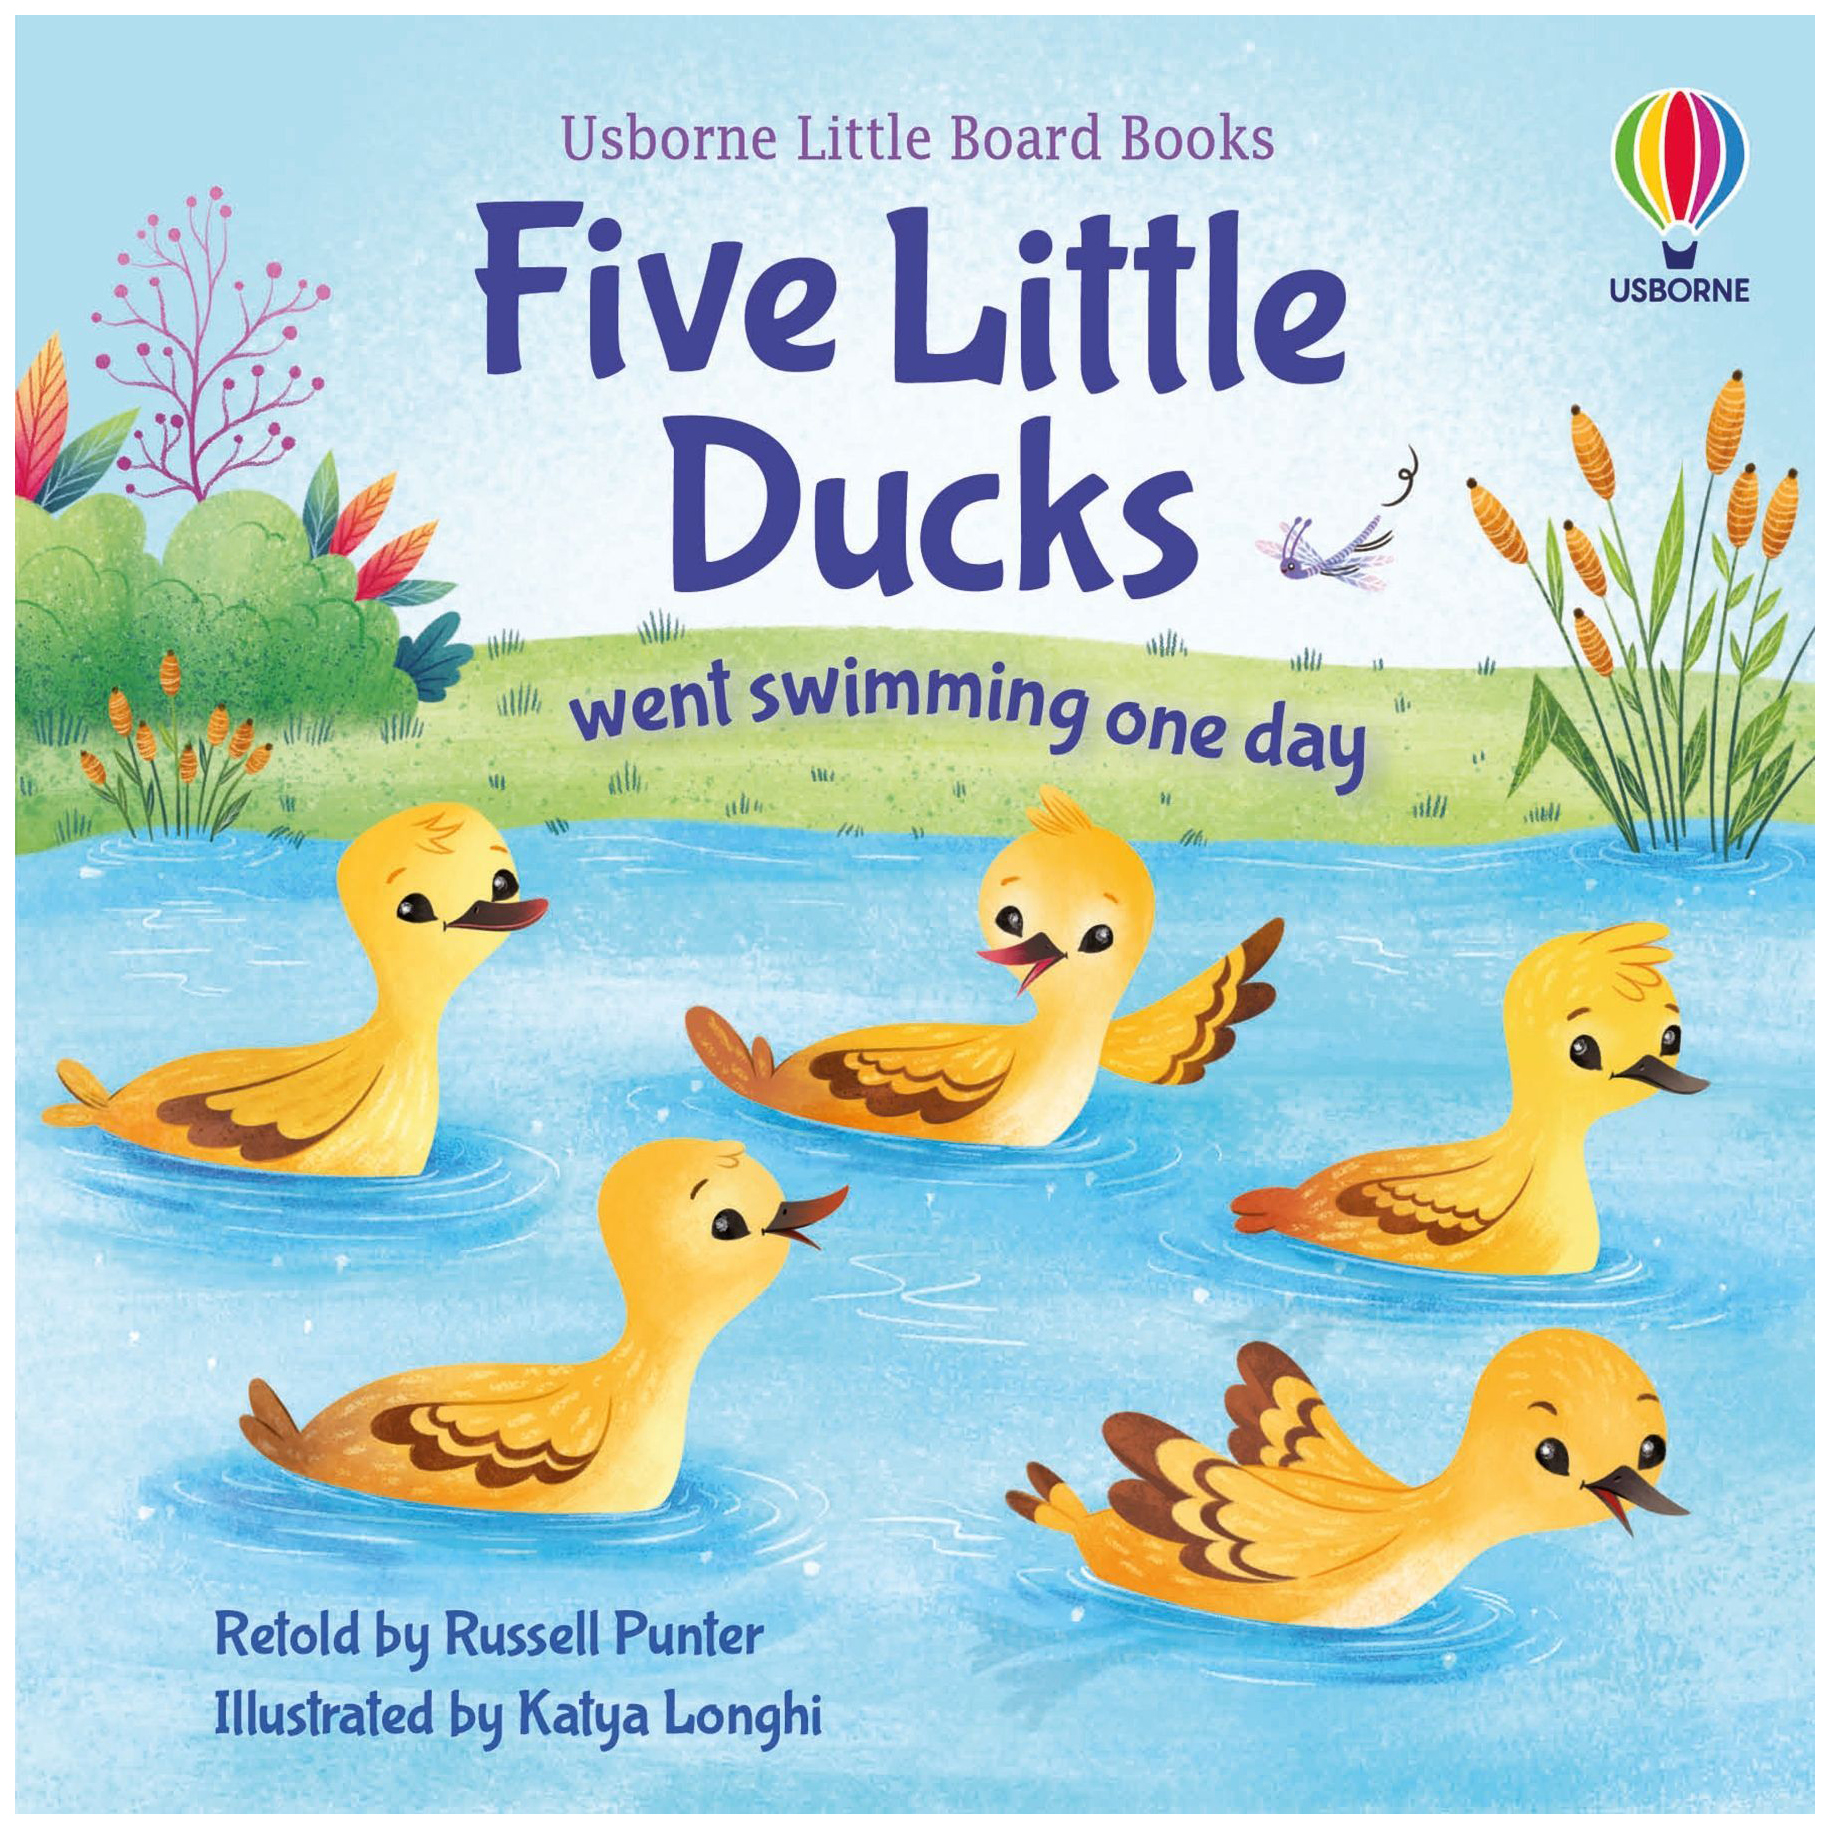 Little board. Five little Ducks. One little Ducks went swimming one Day. Five little Ducks went swimming one Day текст. 5 Little Ducks went swimming one Day.